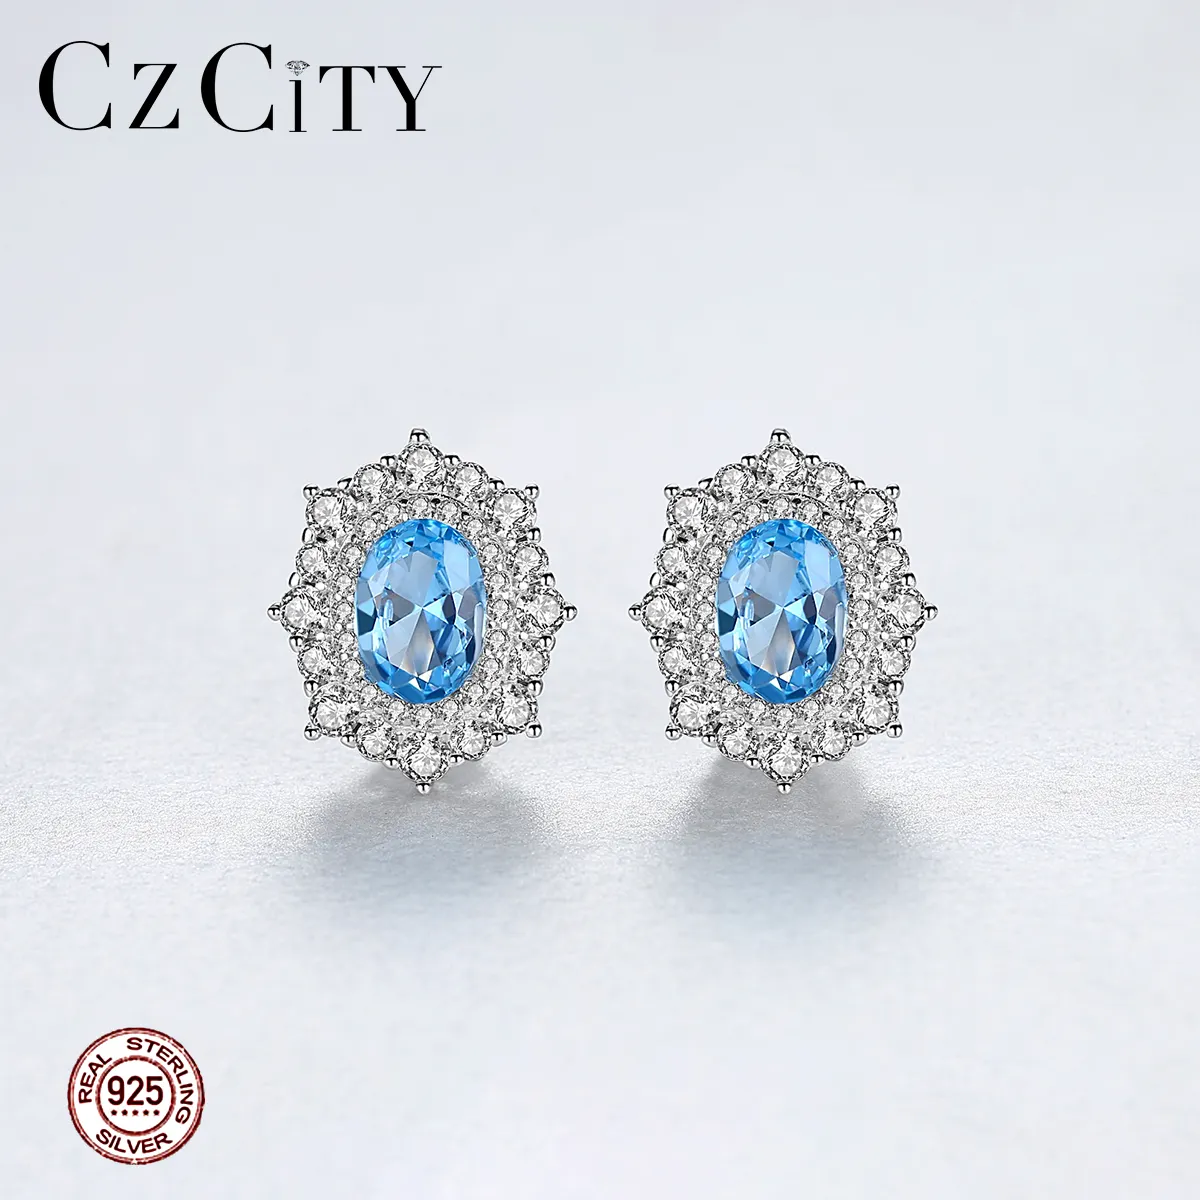 CZCITY 925 Gümüş Küpe Mavi Topaz Kadınlar Takı Kar Çiçek şekilli değerli taş Büyük düğme küpe